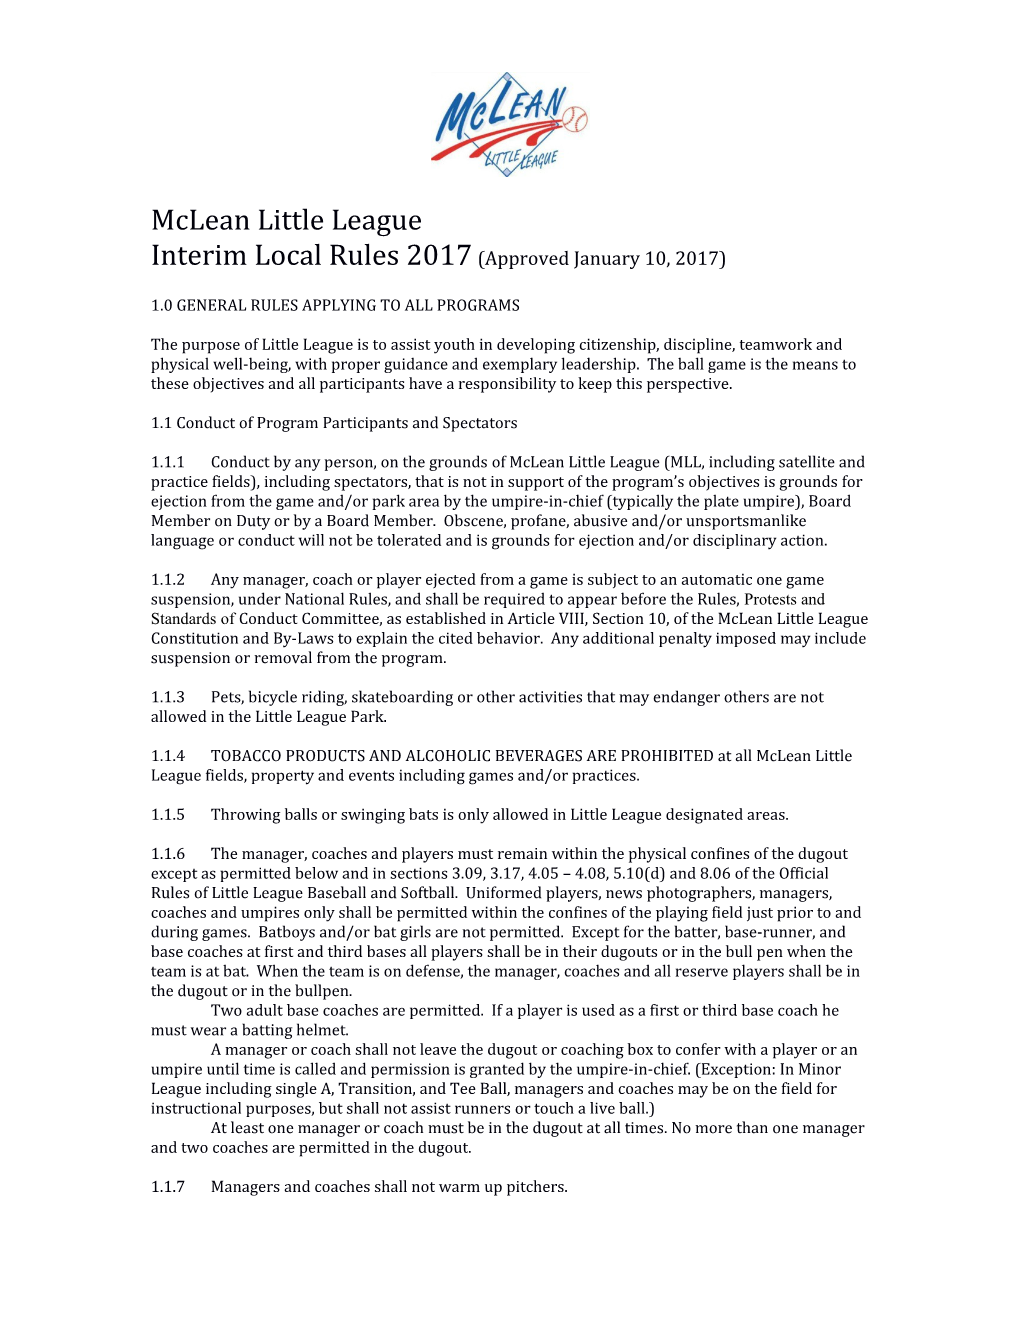 Mclean Little League, Inc